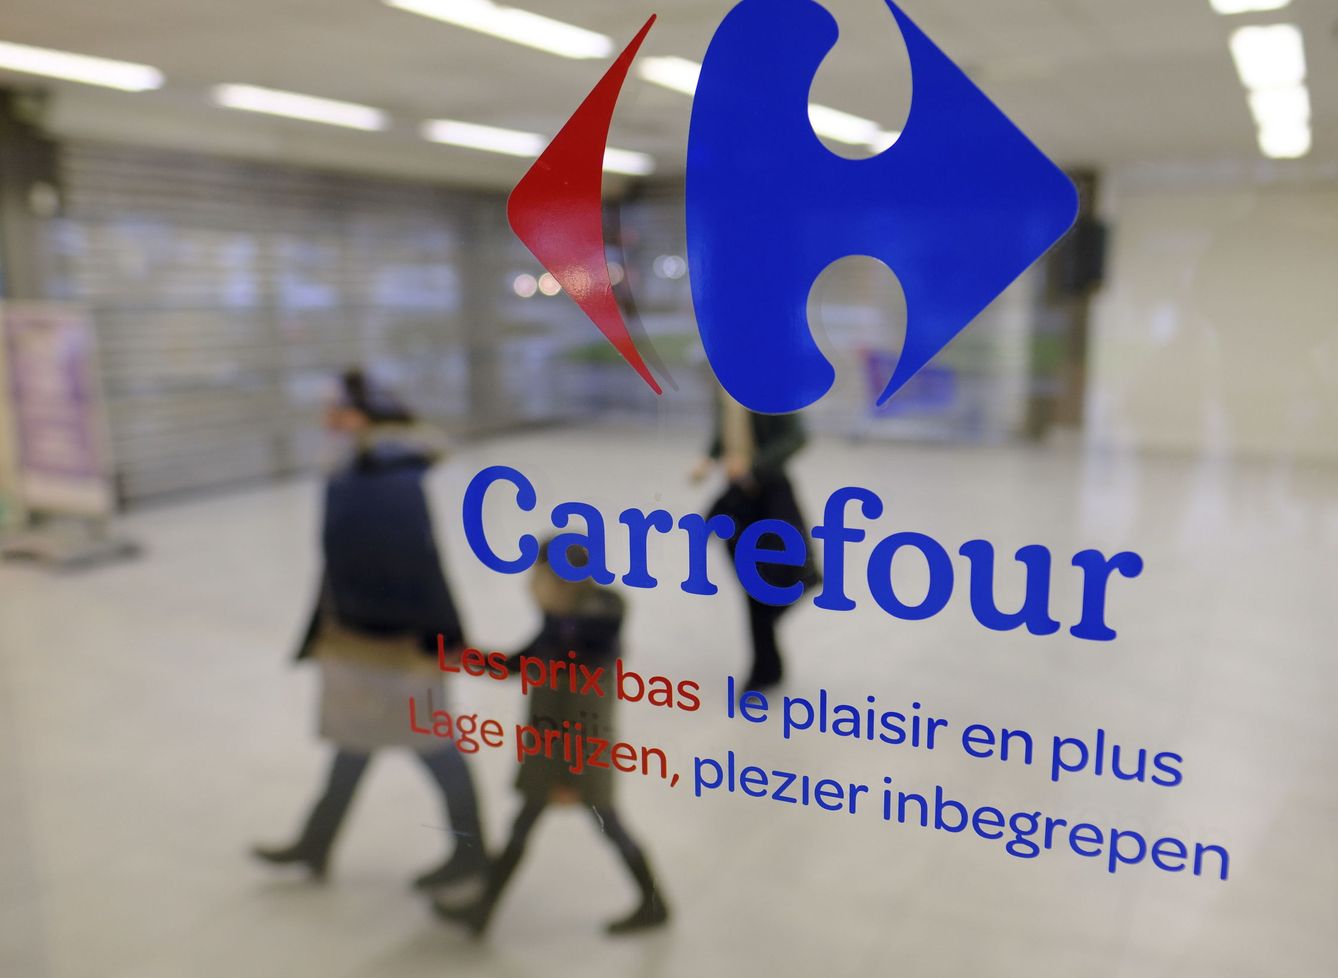 Tienda de Carrefour en Francia. (EFE/Olivier Hoslet)